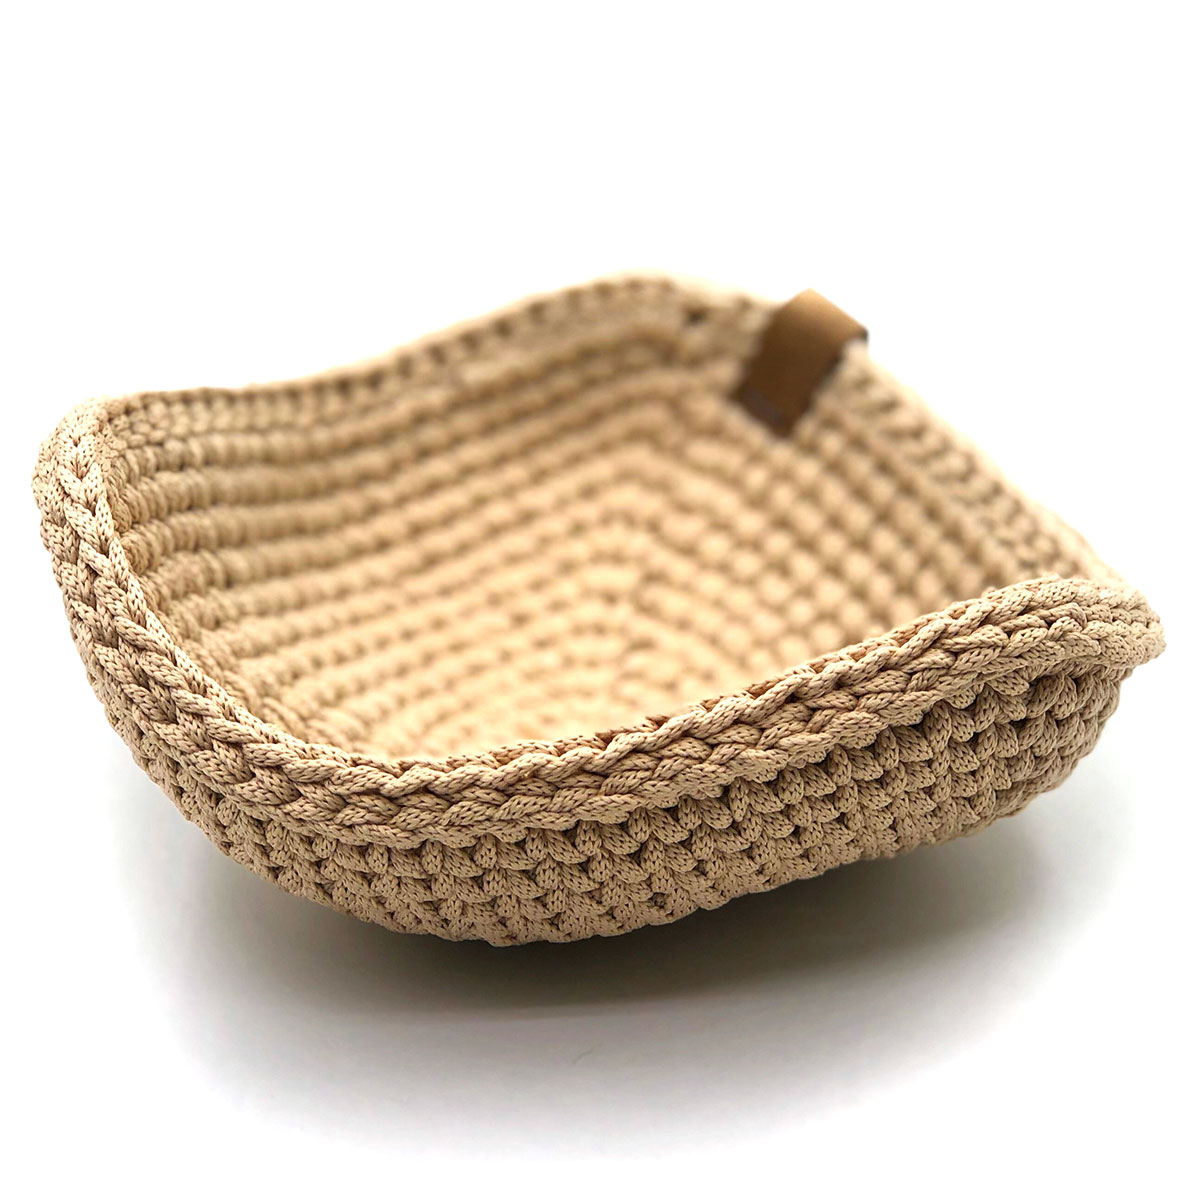 Корзинка плетеная Kenai Ceramics 18см, цвет бежевый Kenai Ceramics KOR_18_BE - фото 1